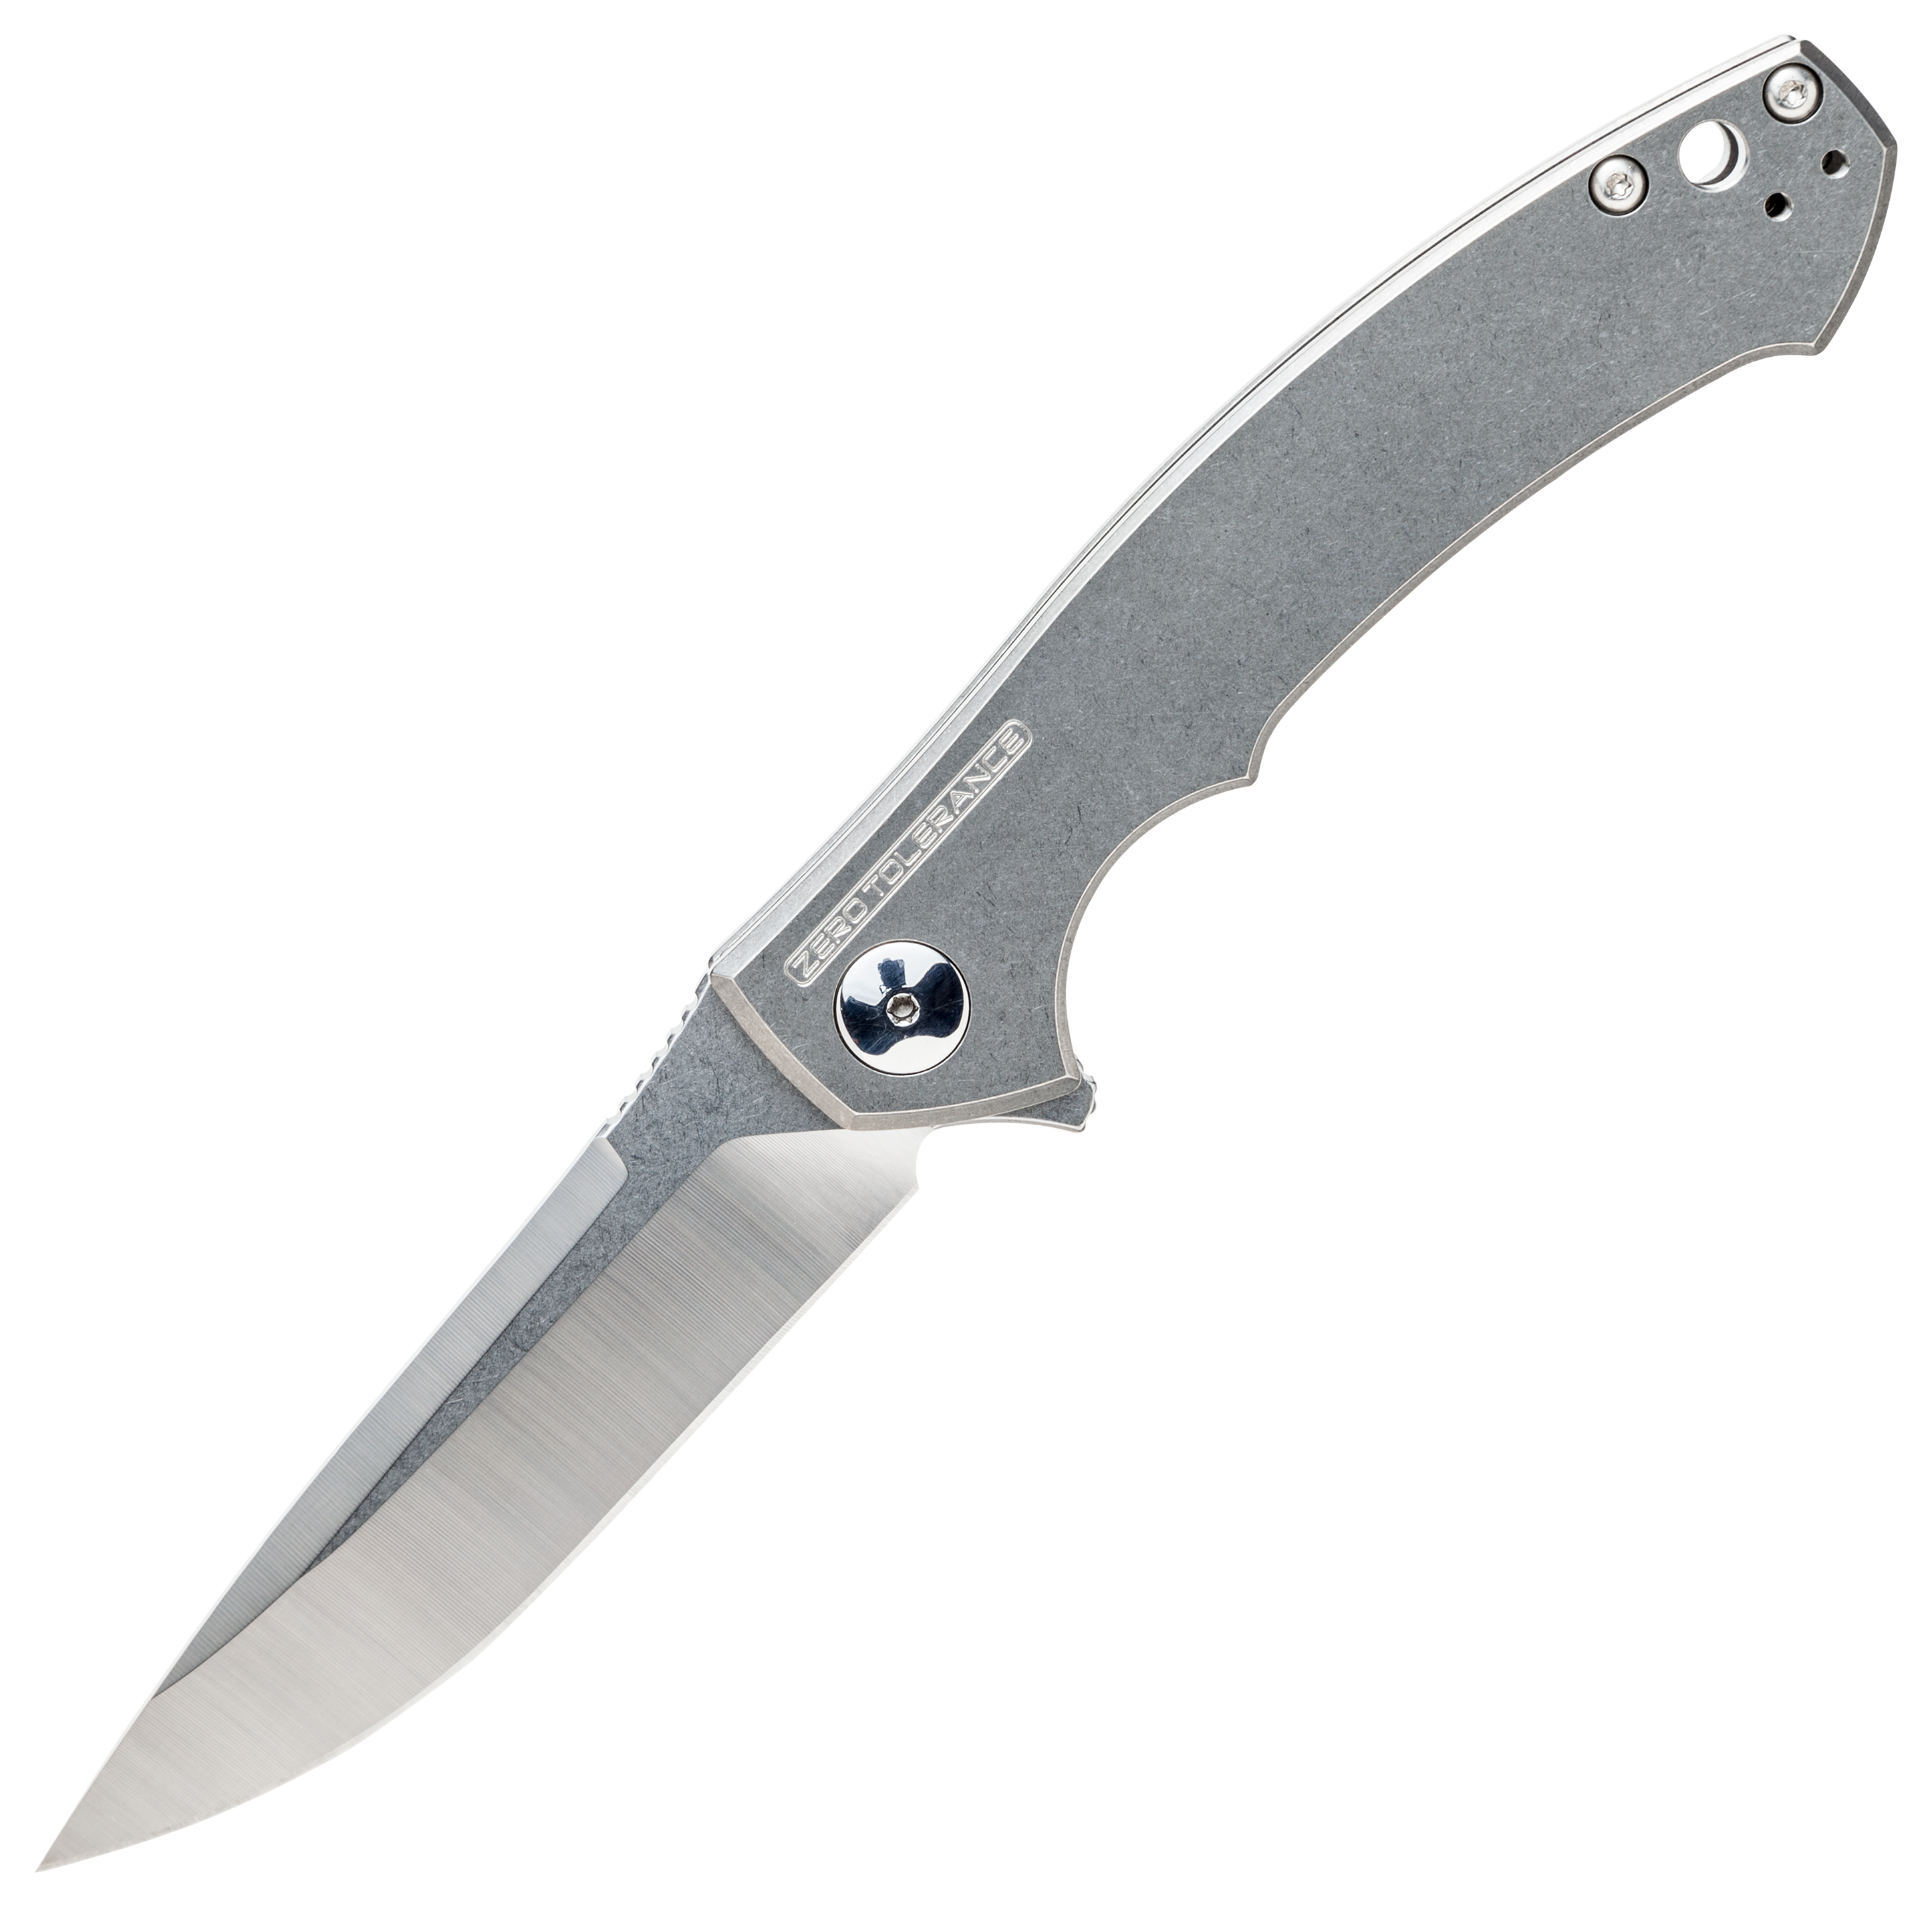 Zero Tolerance Sinkevich 0450 Folding Knife